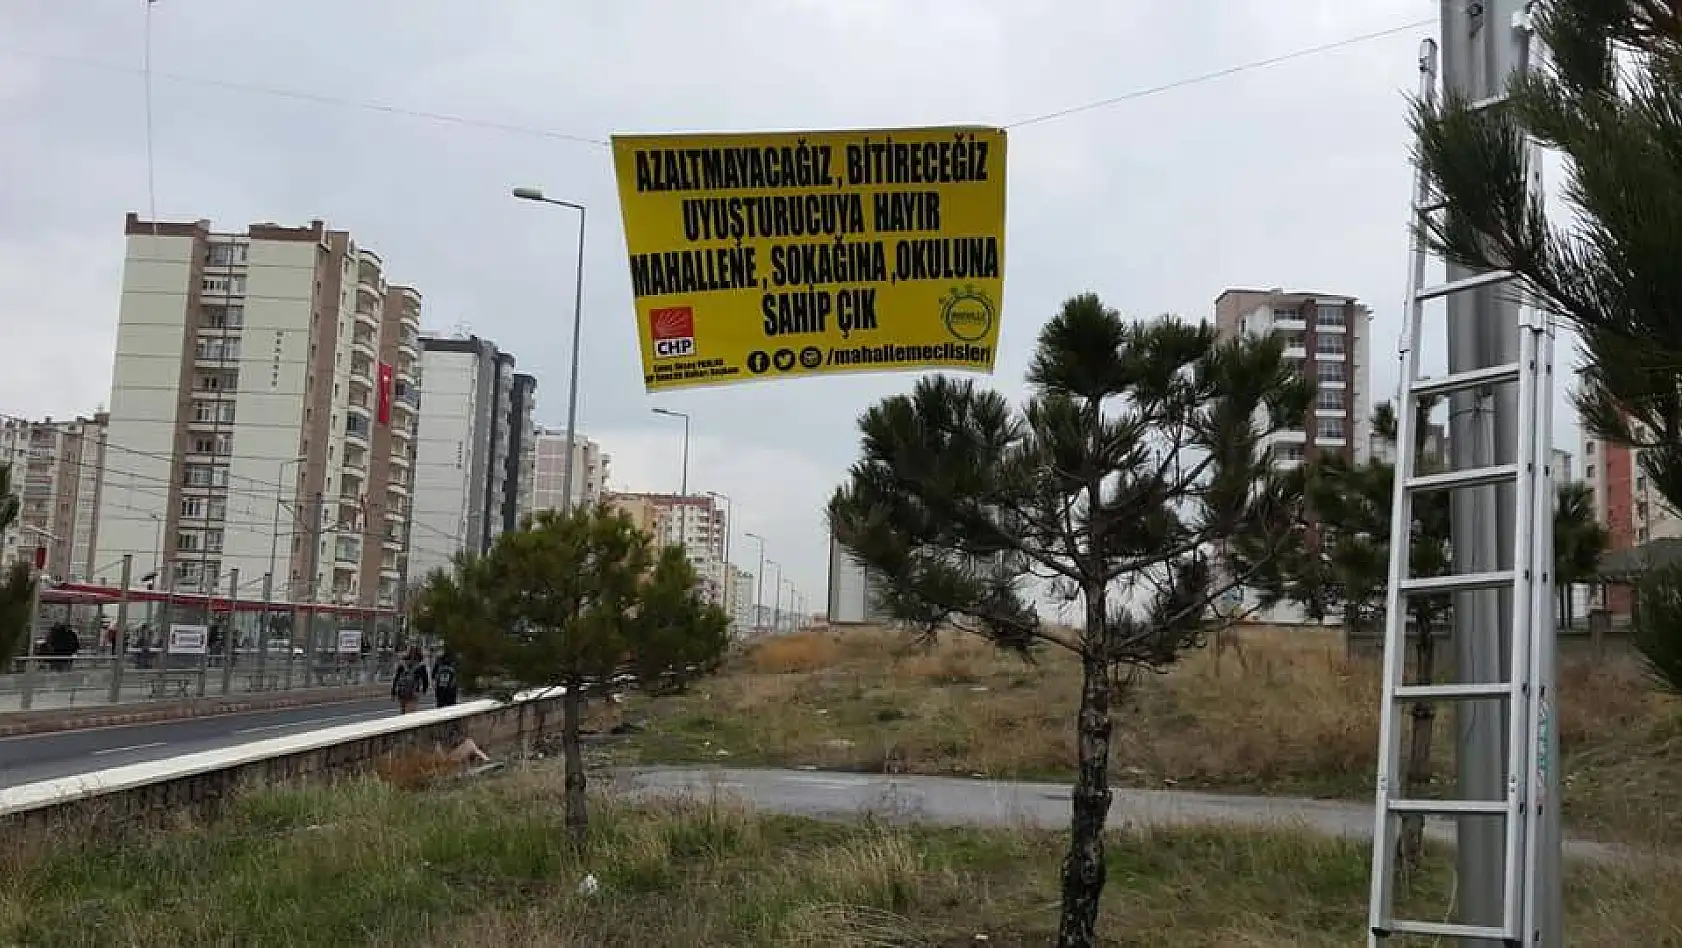 CHP'li Gençlerden 'Uyuşturucuya hayır, mahallene, sokağına, okuluna sahip çık' afişleri